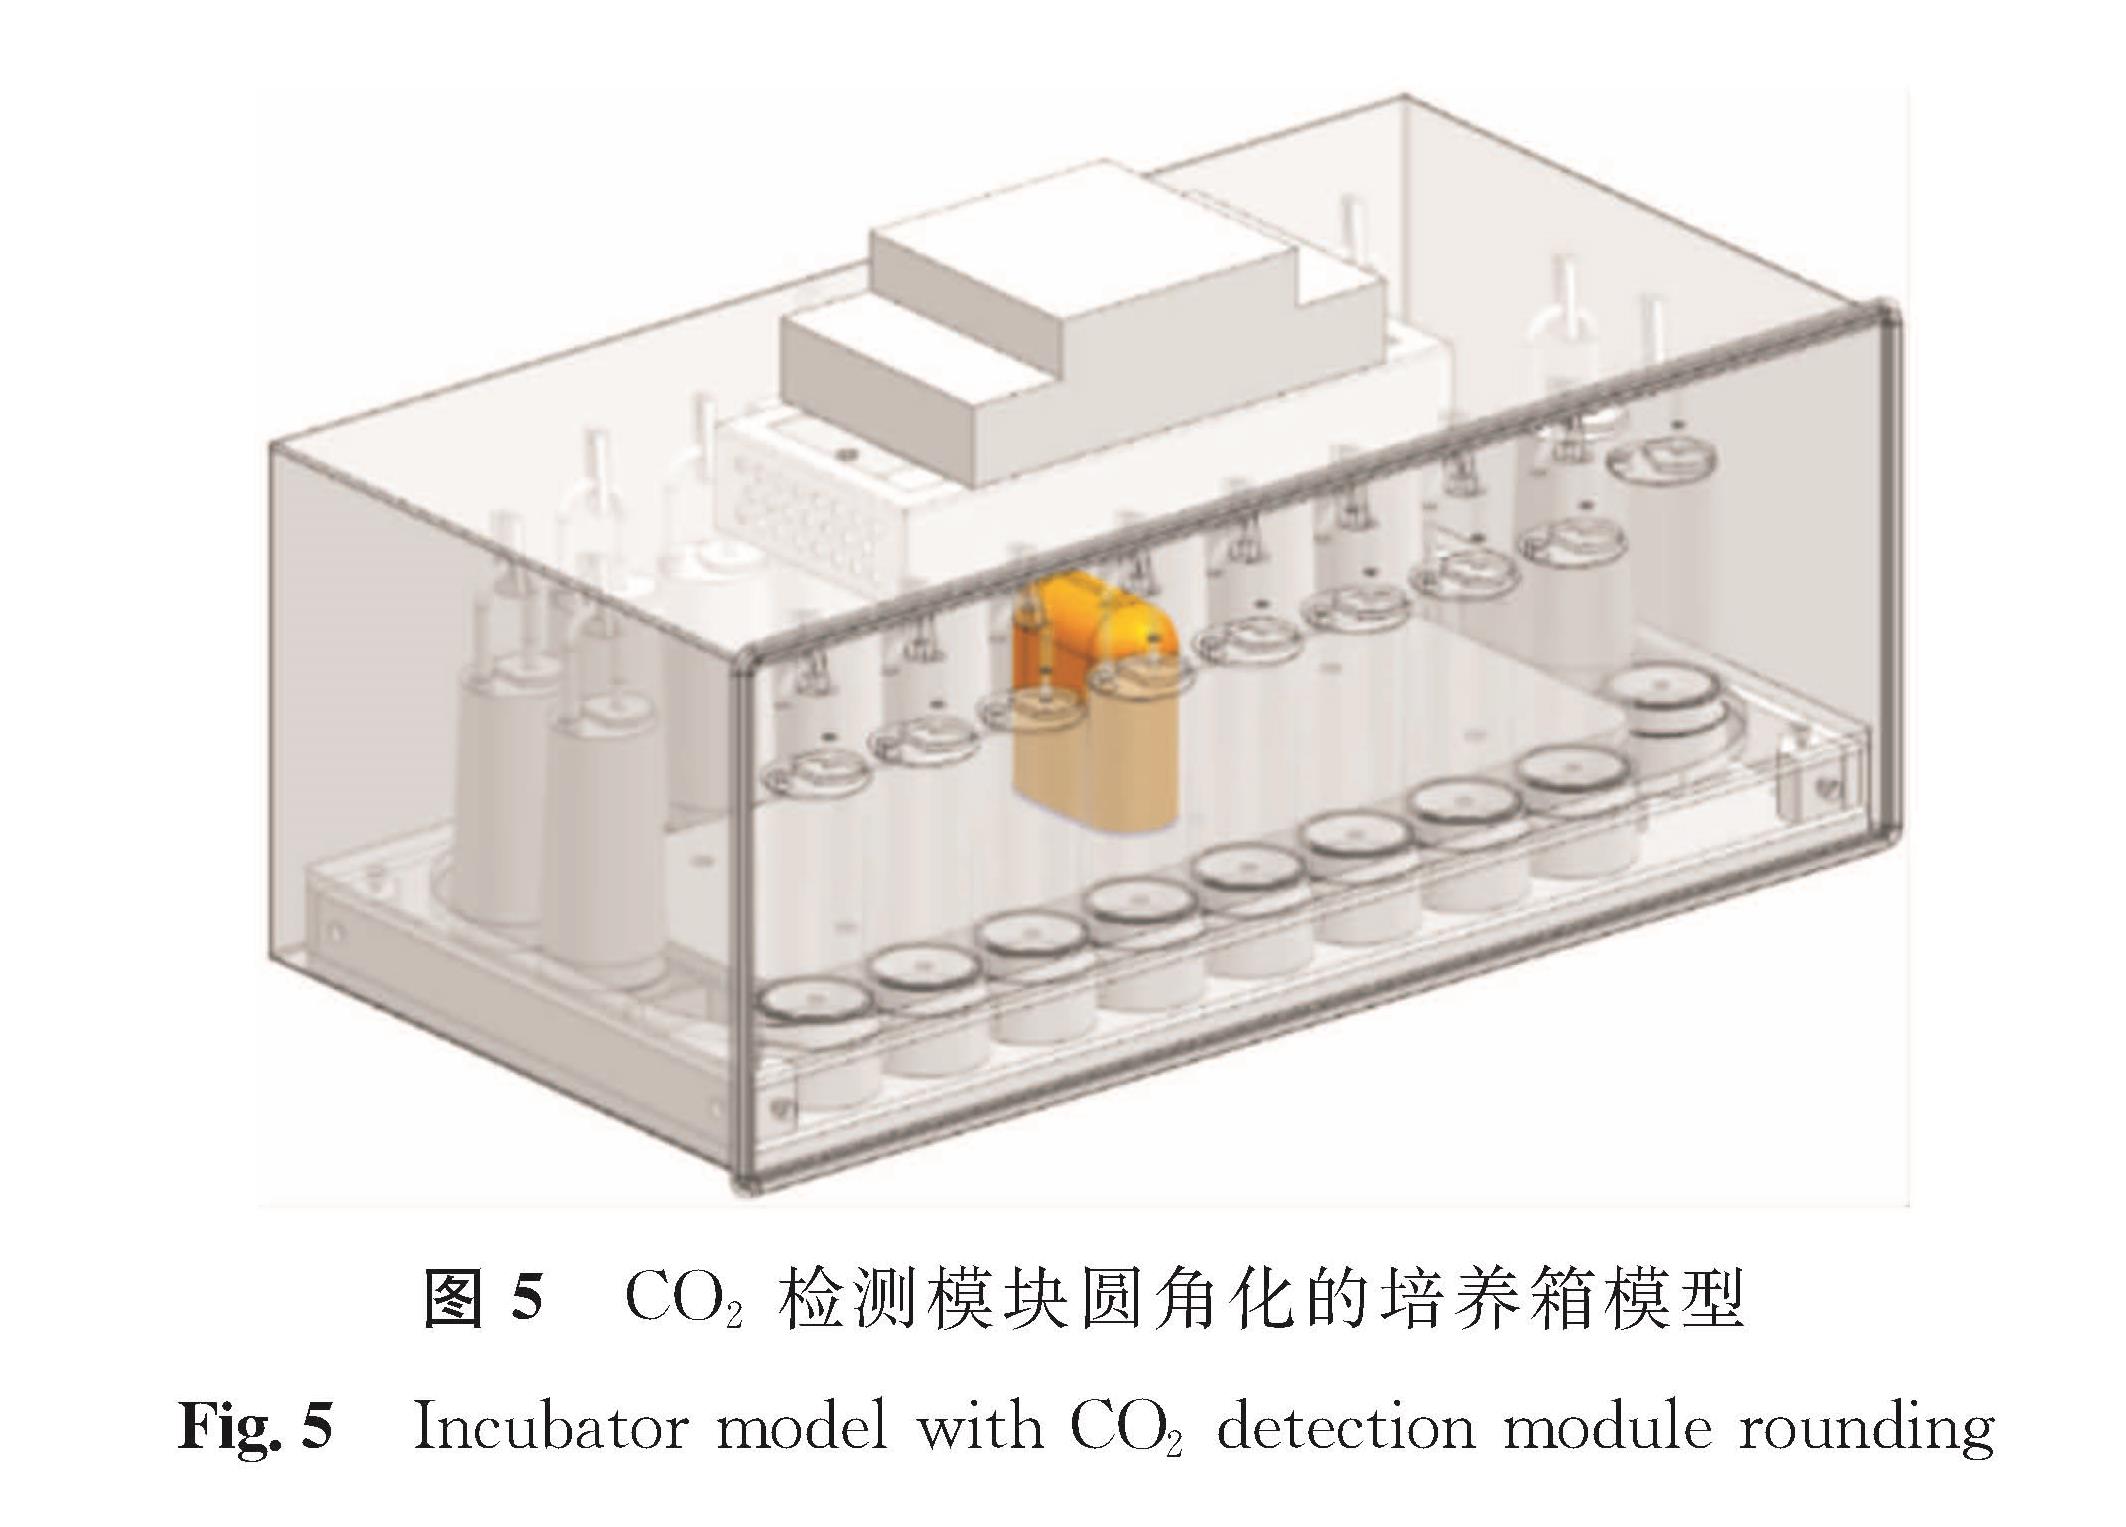 图5 CO2检测模块圆角化的培养箱模型<br/>Fig.5 Incubator model with CO2 detection module rounding